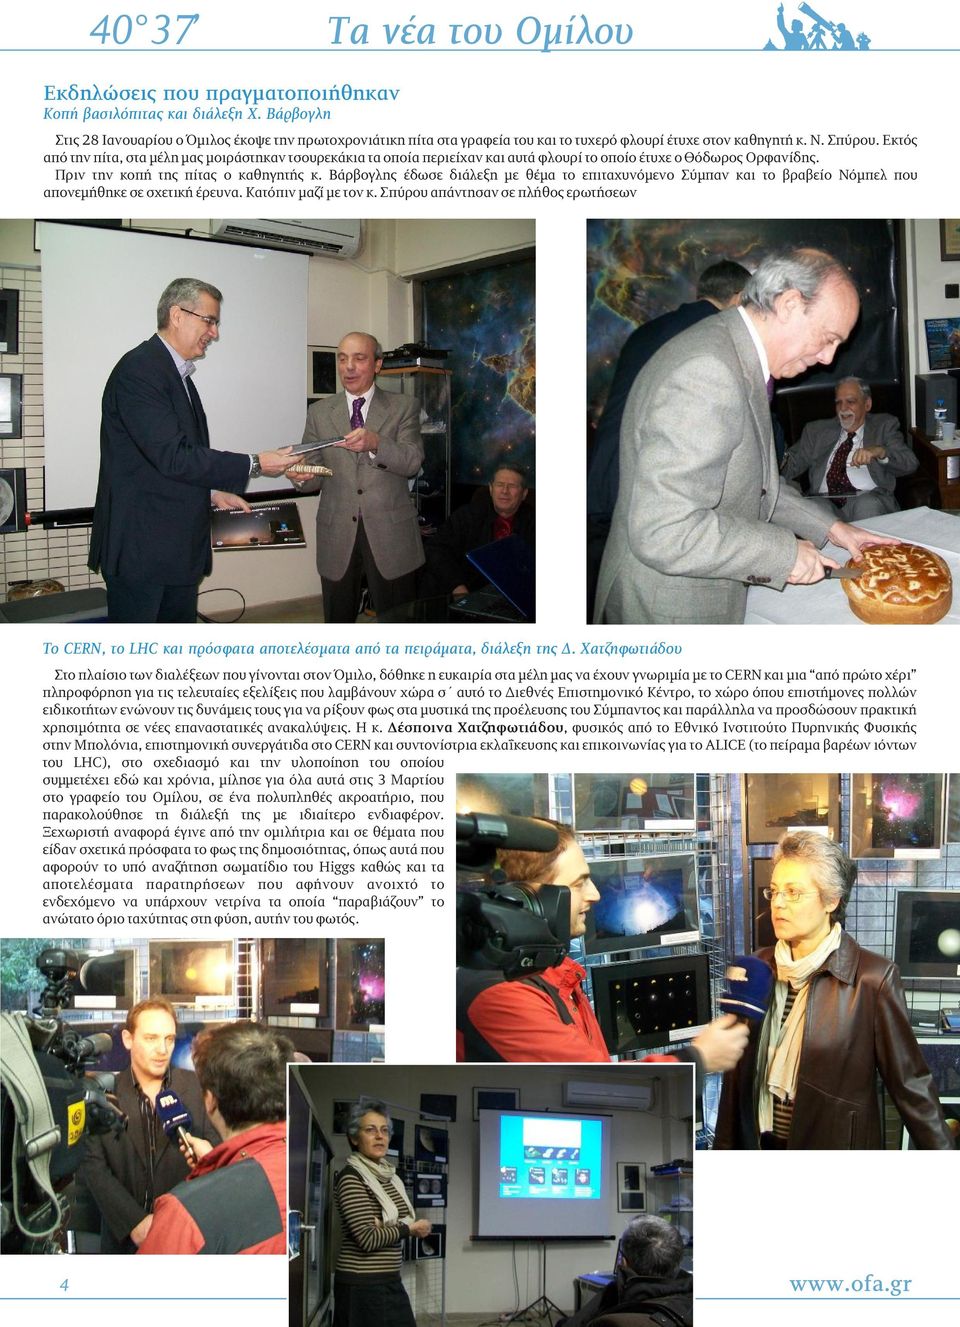 Βάρβογλης έδωσε διάλεξη με θέμα το επιταχυνόμενο Σύμπαν και το βραβείο Νόμπελ που απονεμήθηκε σε σχετική έρευνα. Κατόπιν μαζί με τον κ.